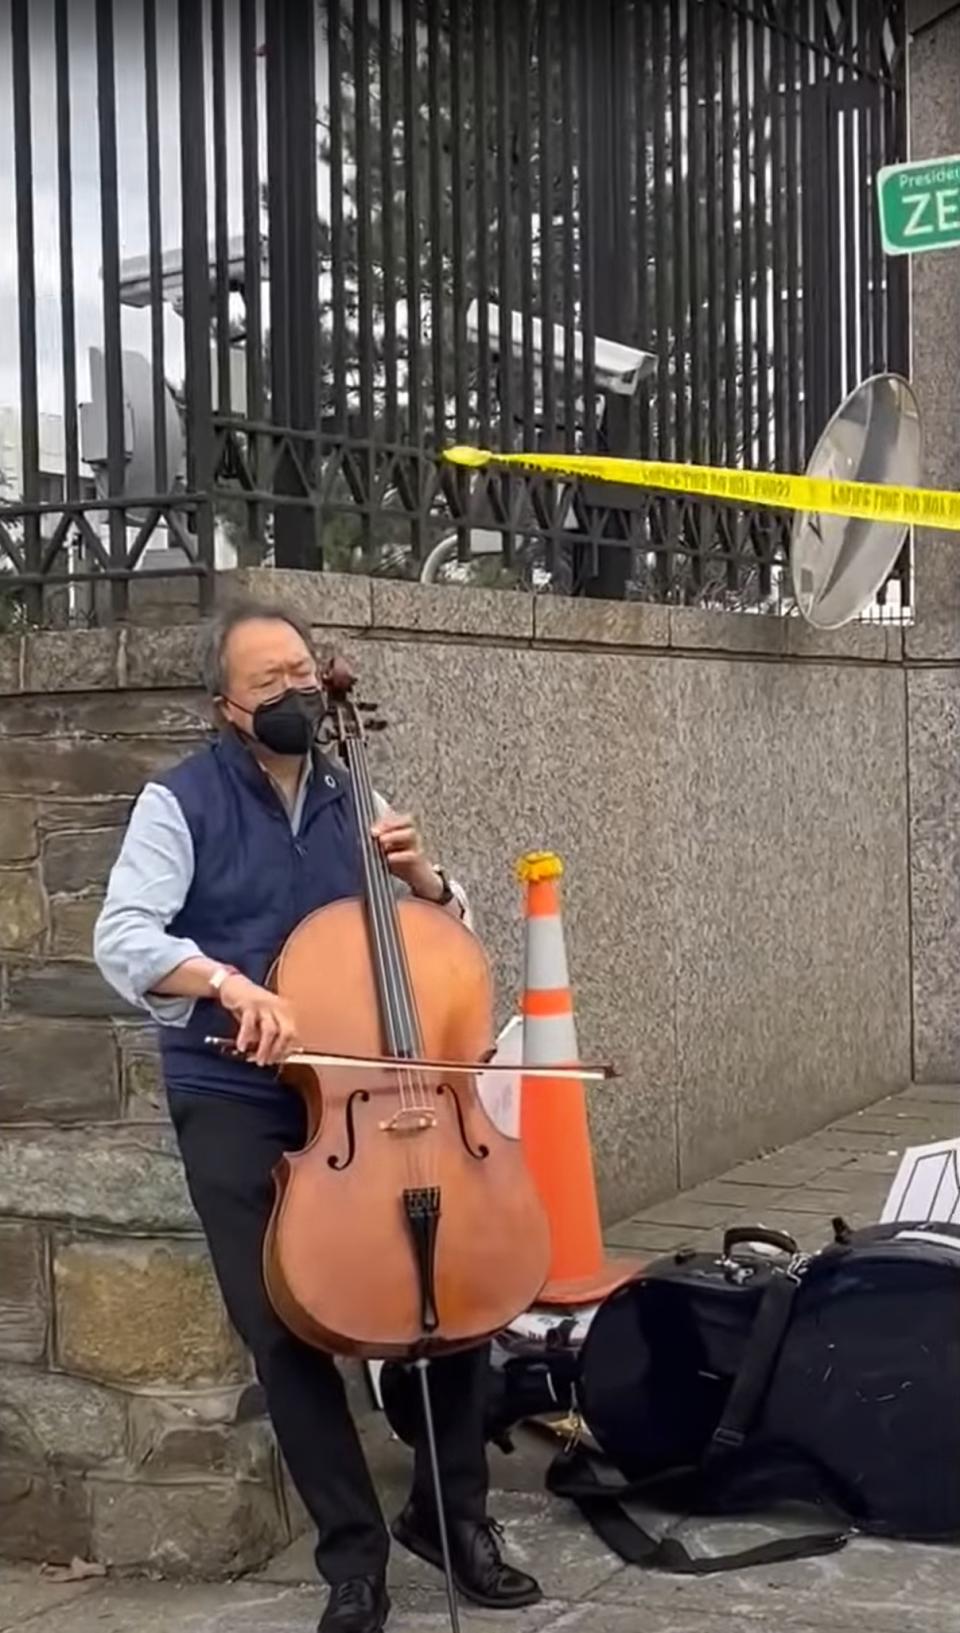 提琴家馬友友在俄大使館前獨自演奏